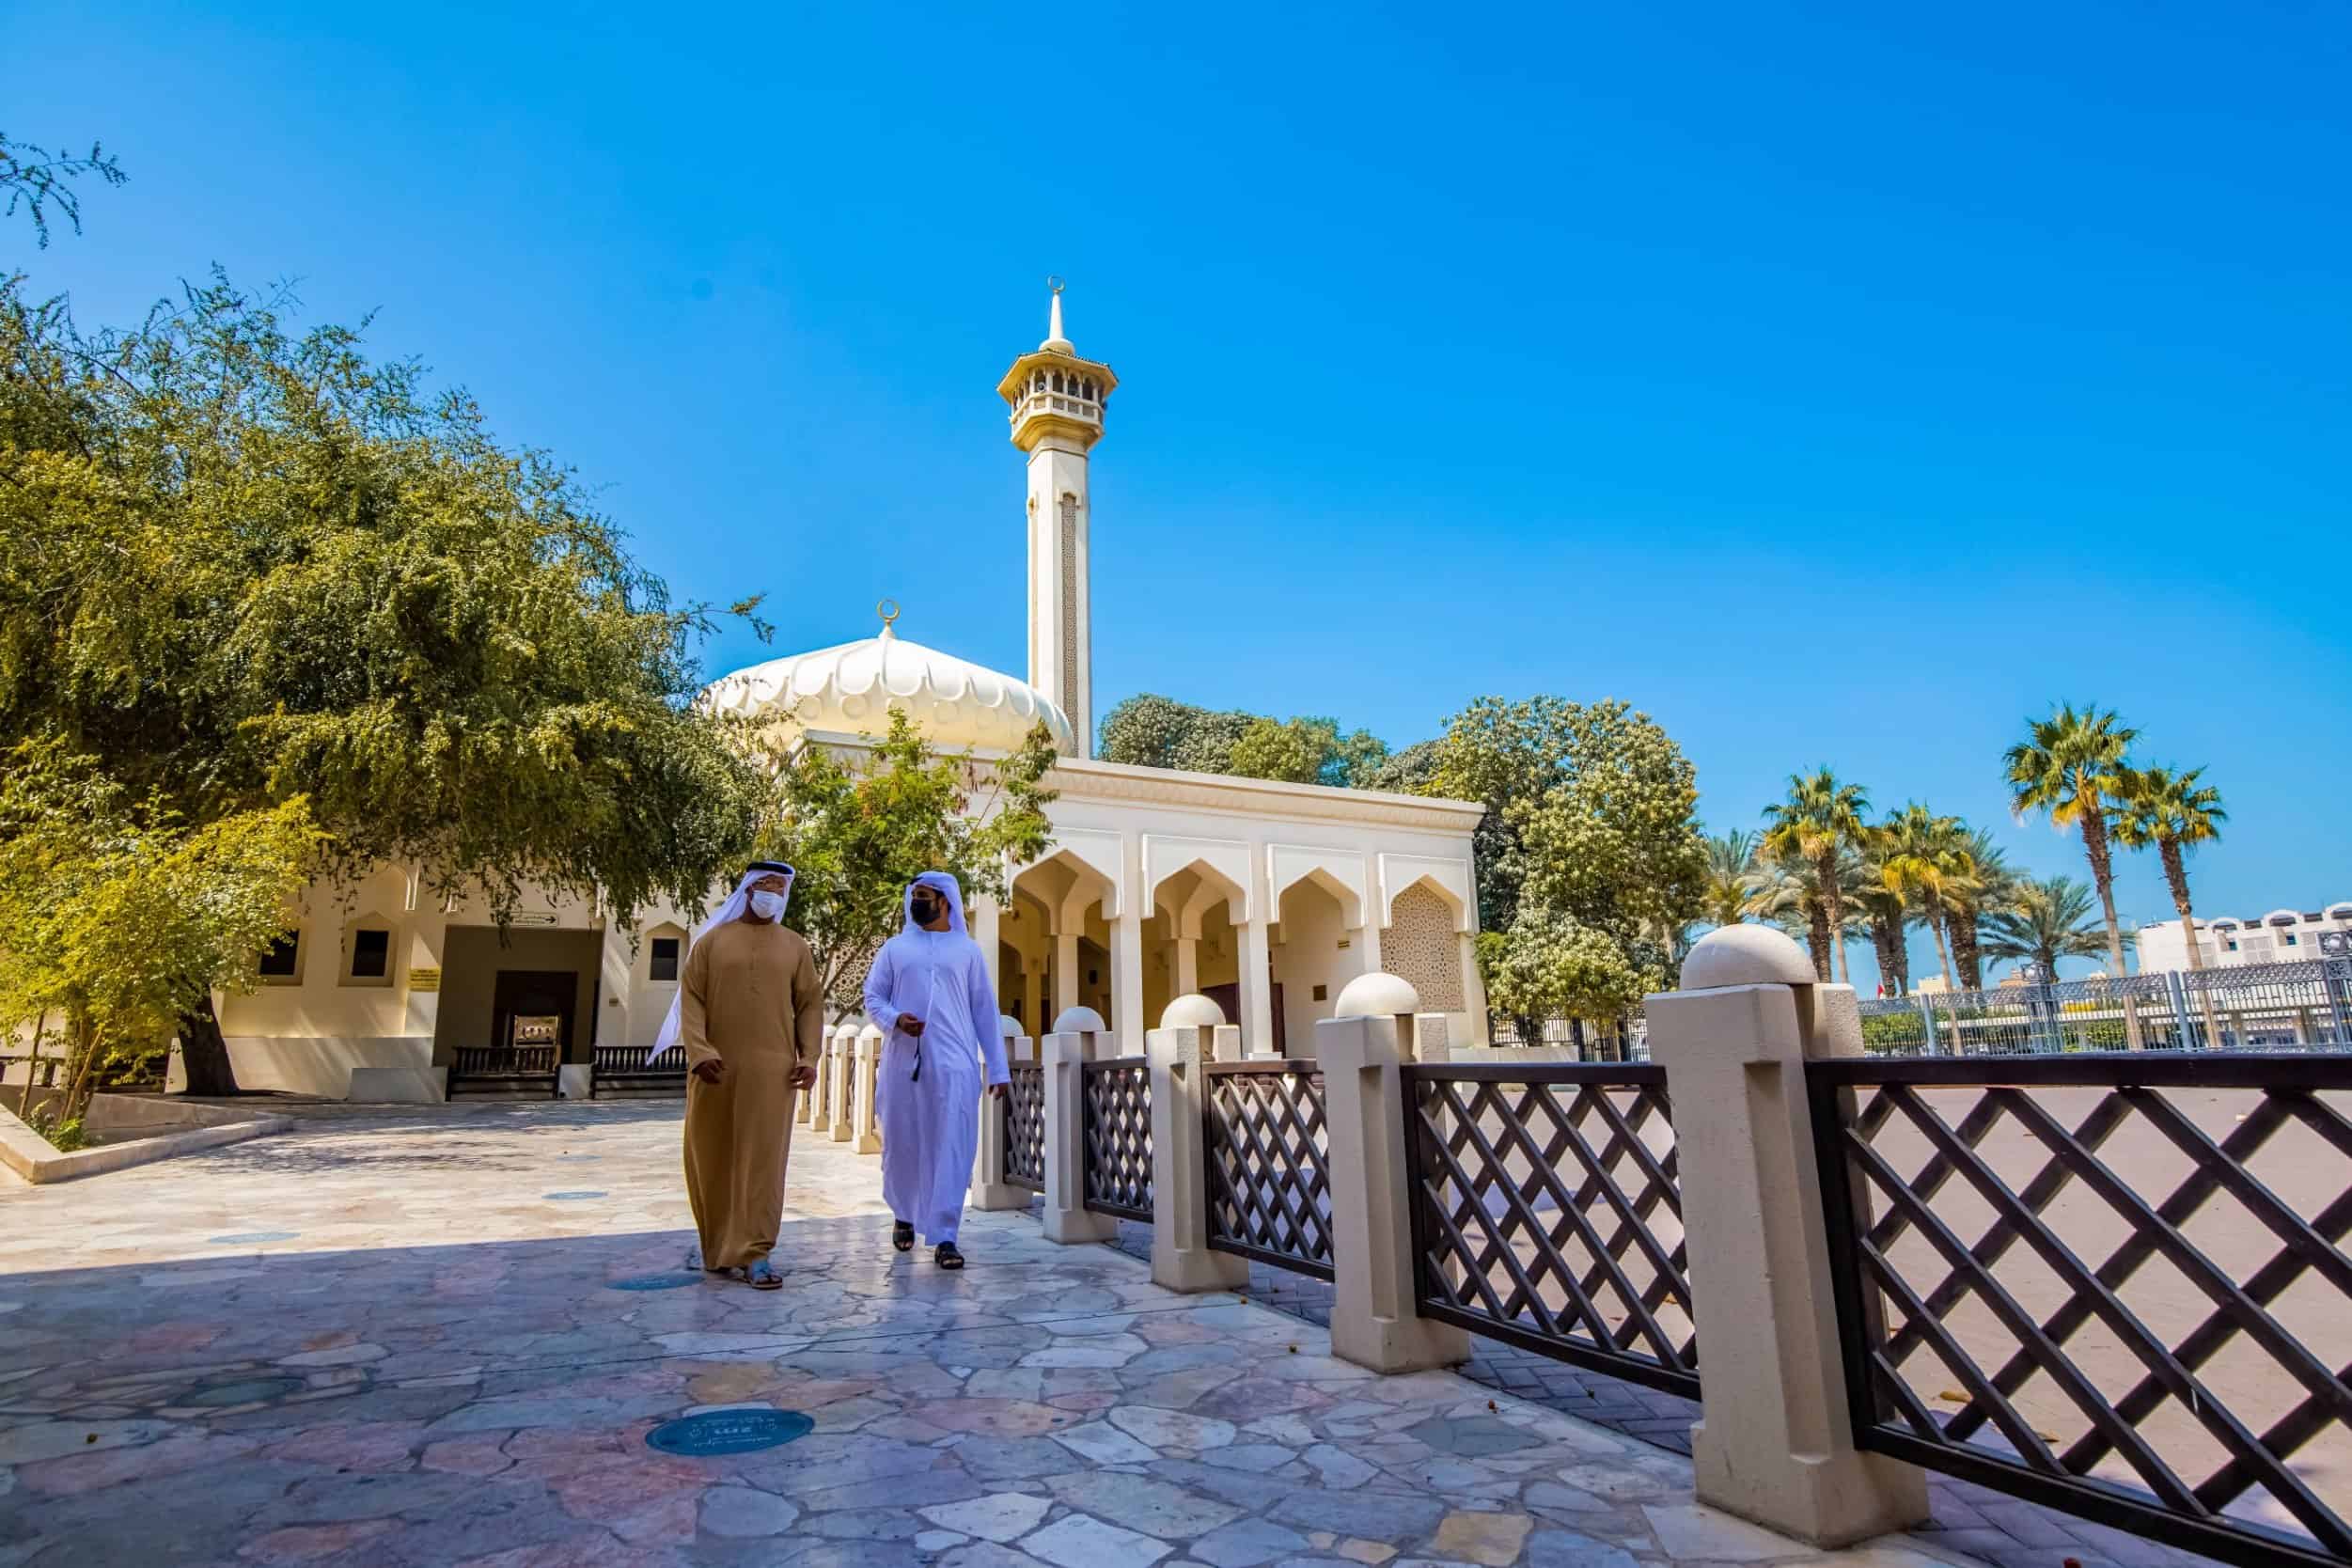 Dubai hija destinazzjoni turistika globali mżejna bl-atmosfera tar-Ramadan tagħha